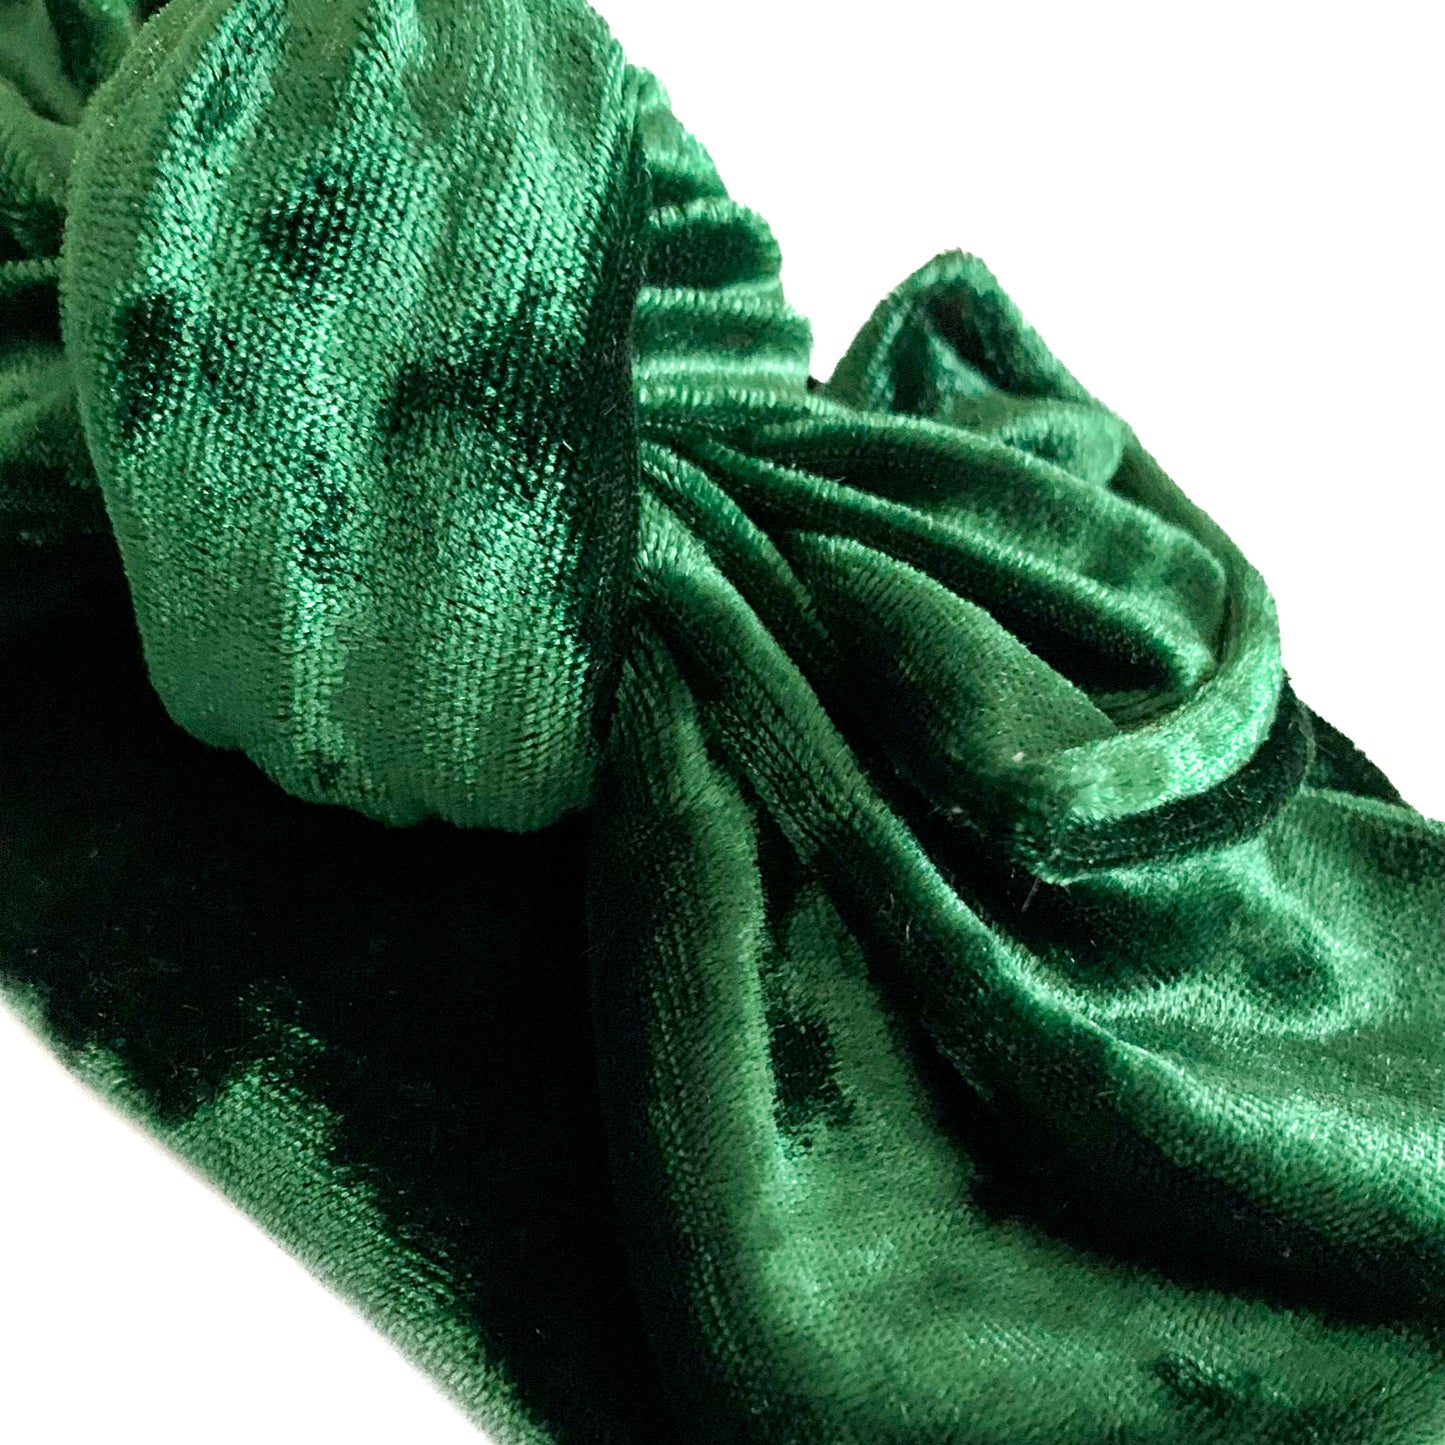 the elve’s green velvet collection